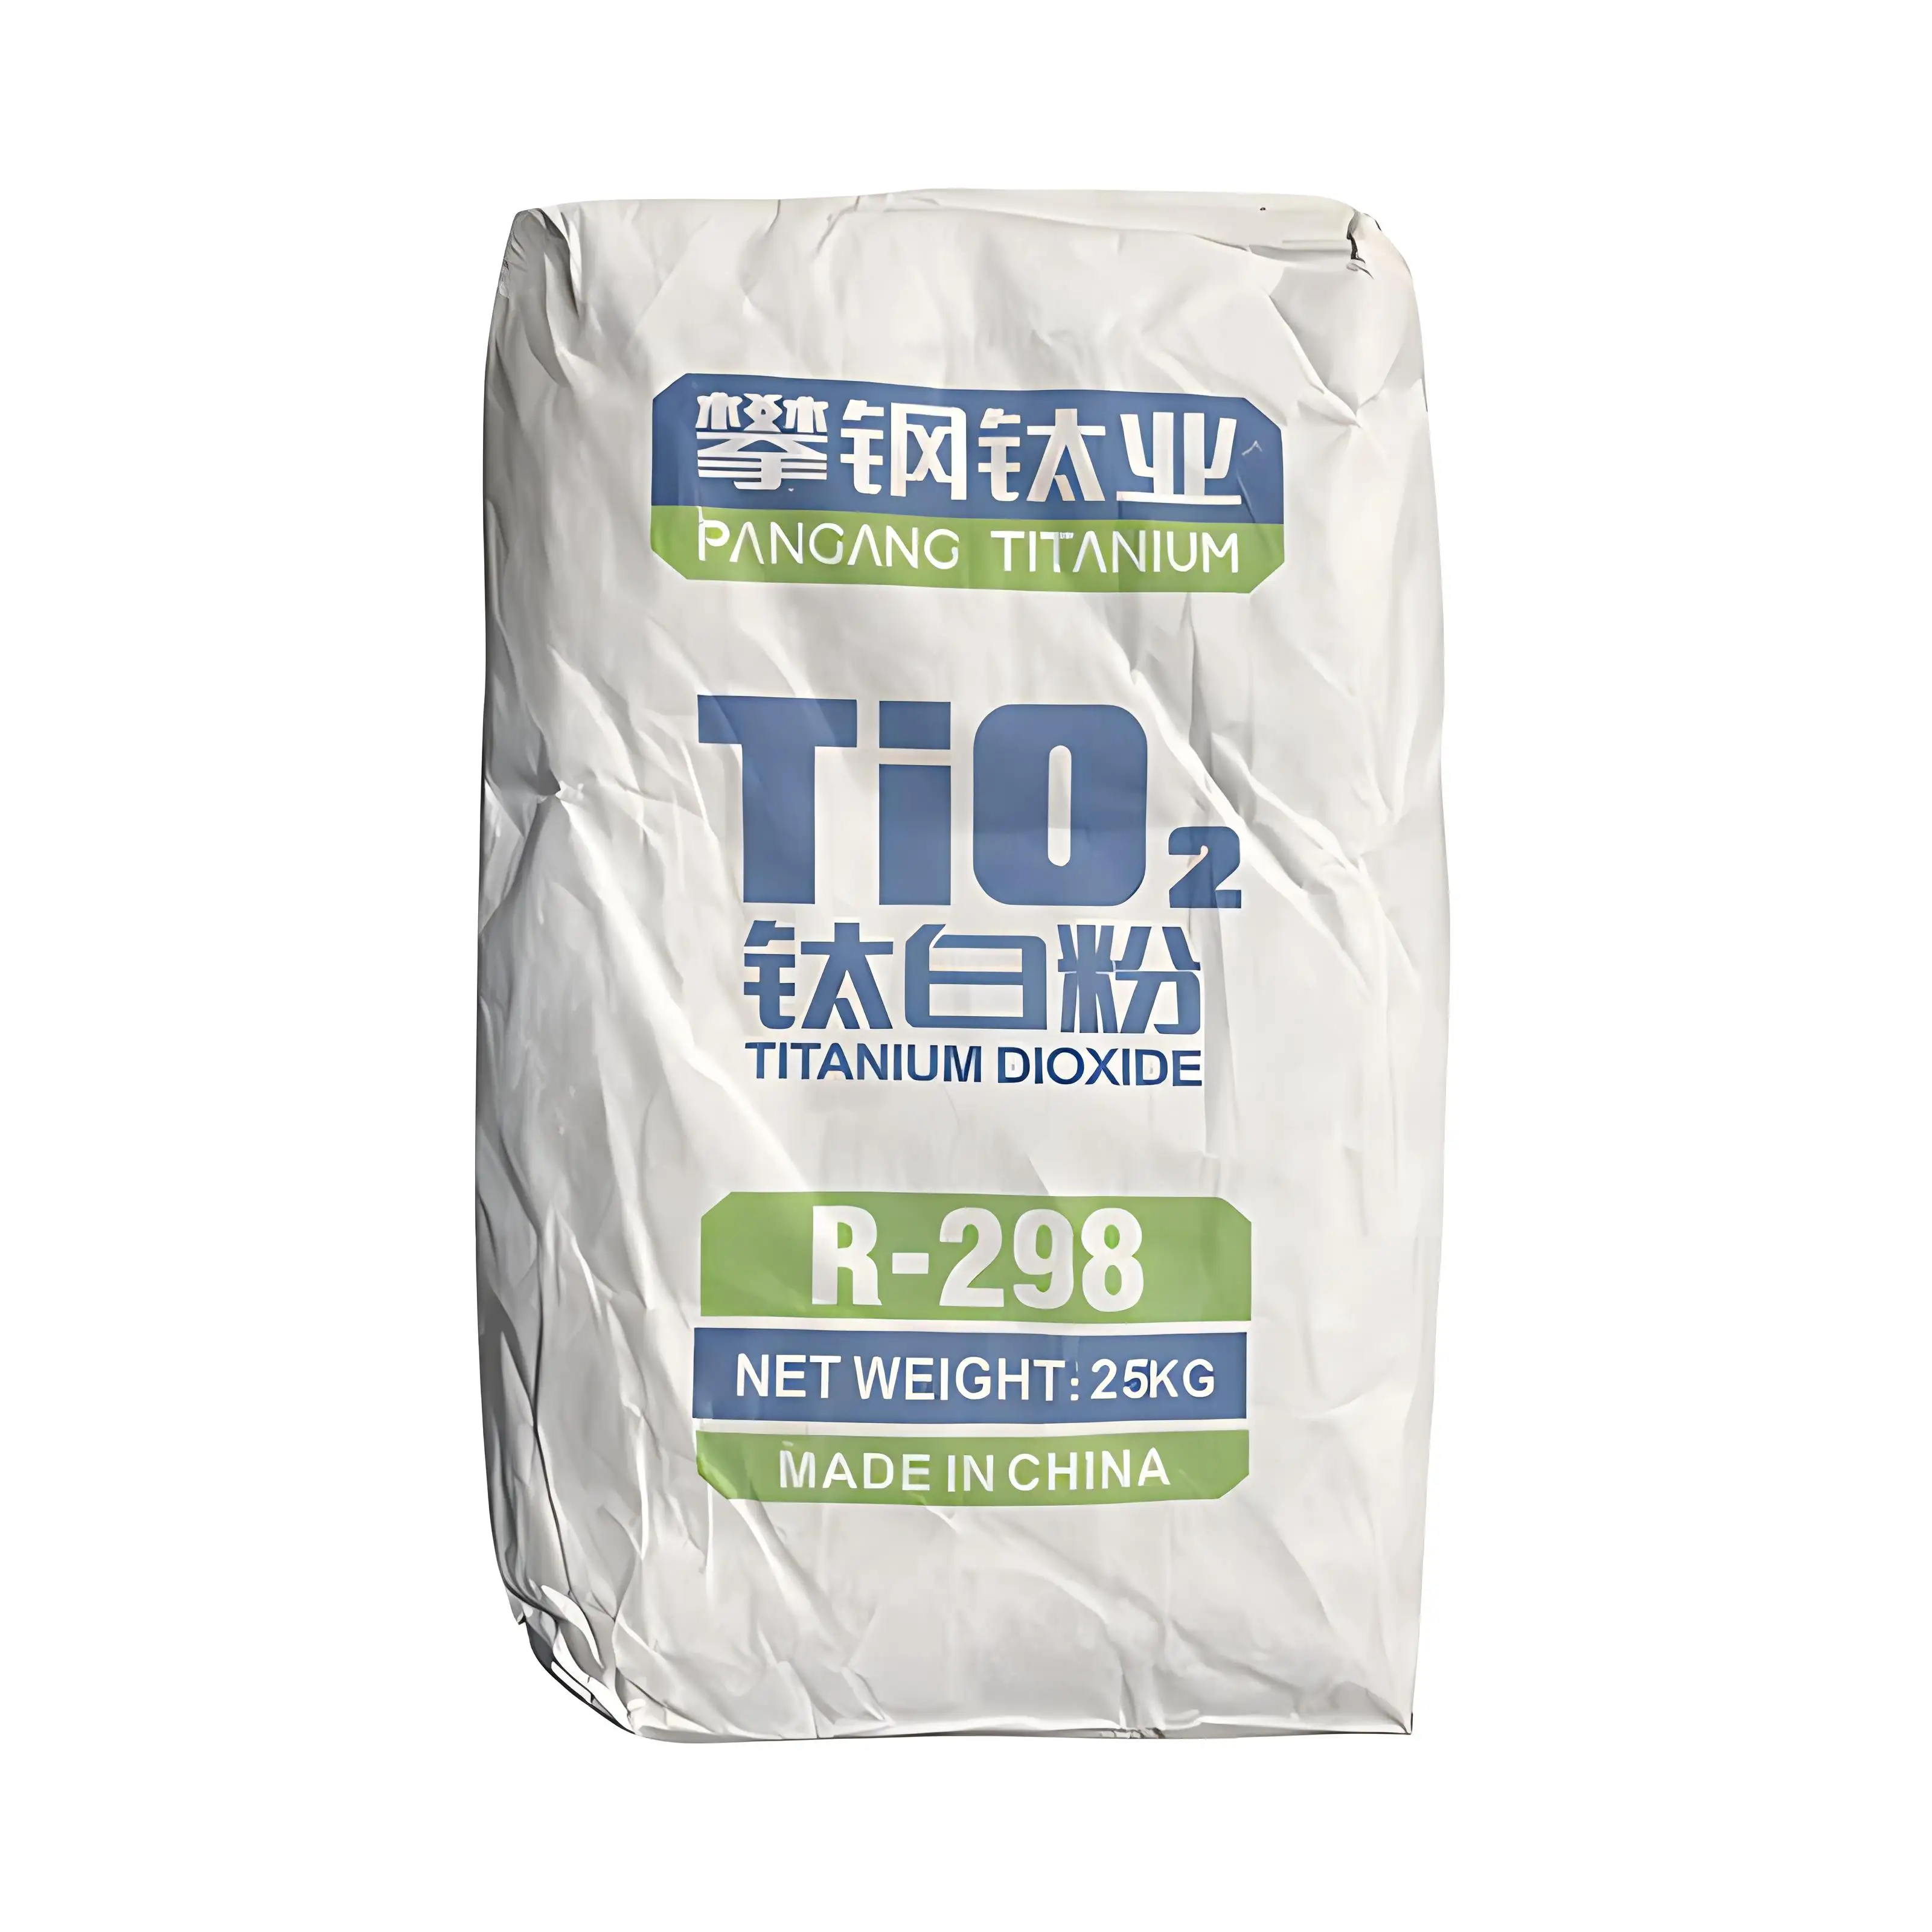 도매 산업 등급 TiO2 분말 코팅 도장을위한 이산화 티타늄 루틸 귀금속 분말